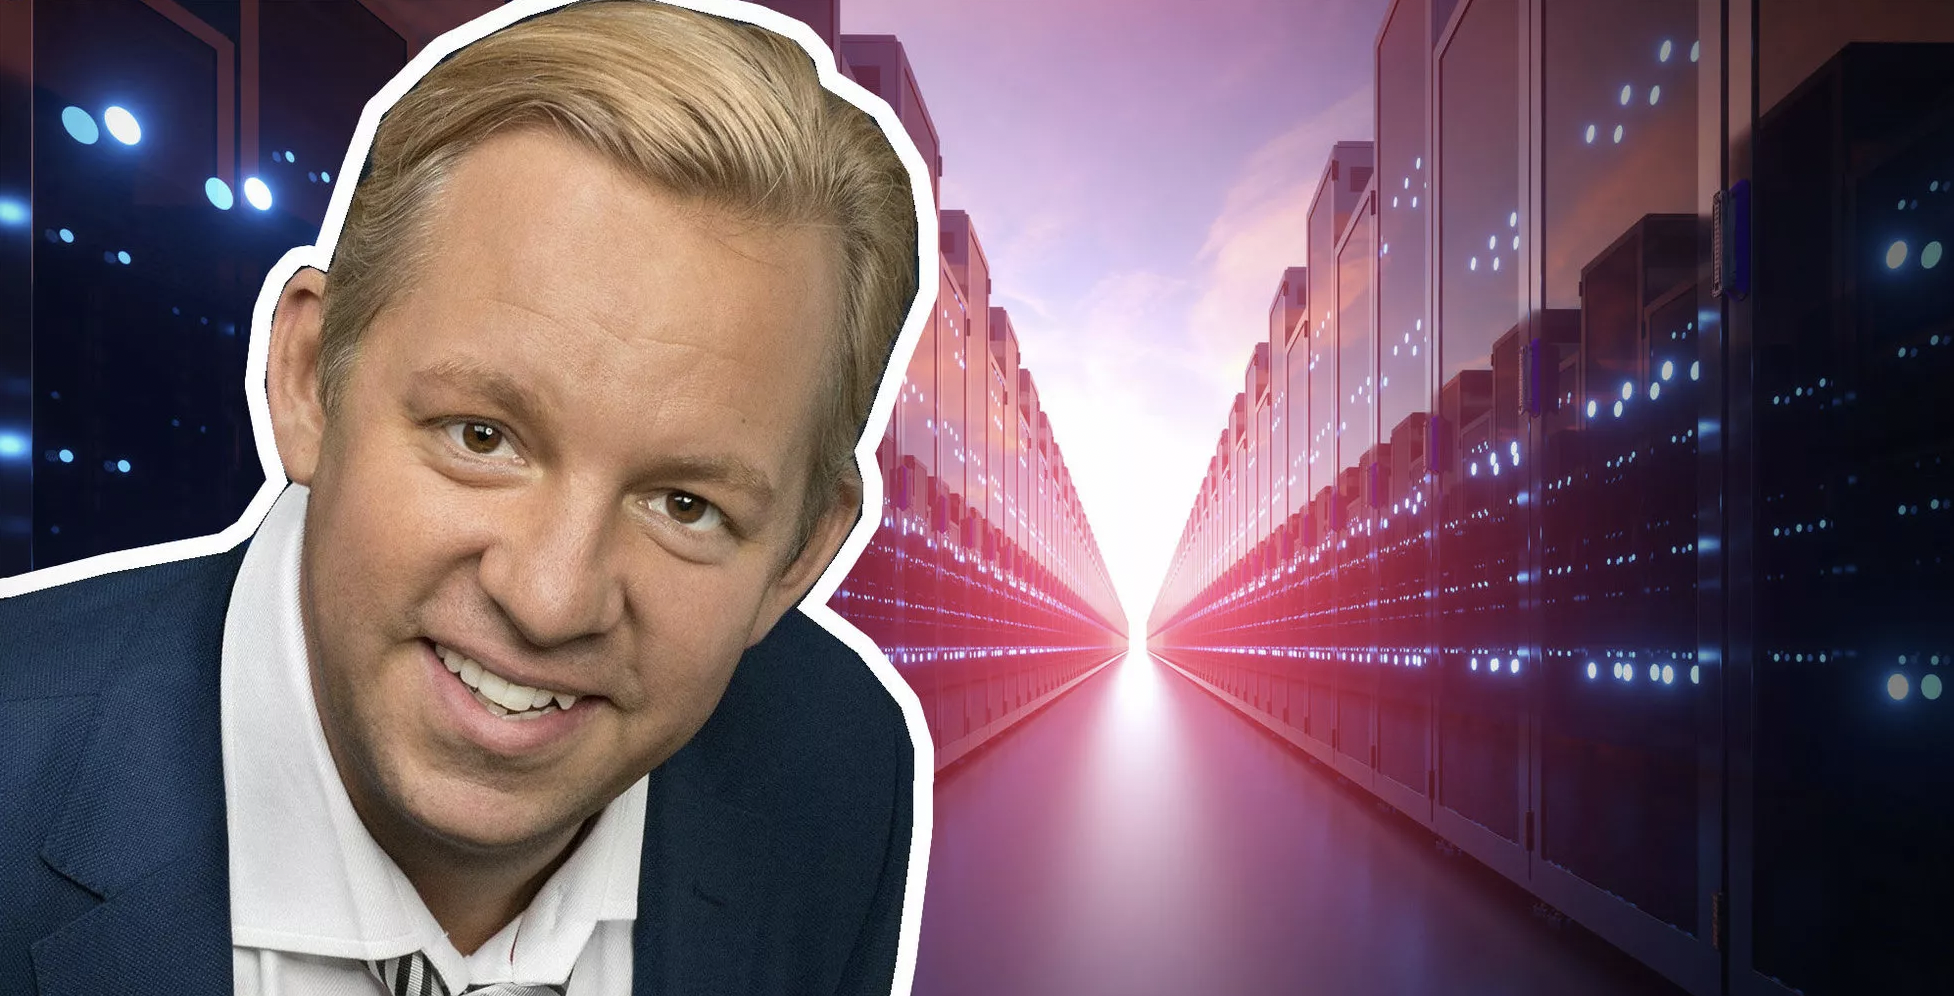 Mattias Kaneteg is Swedens Most Secret Tech Billionaire.